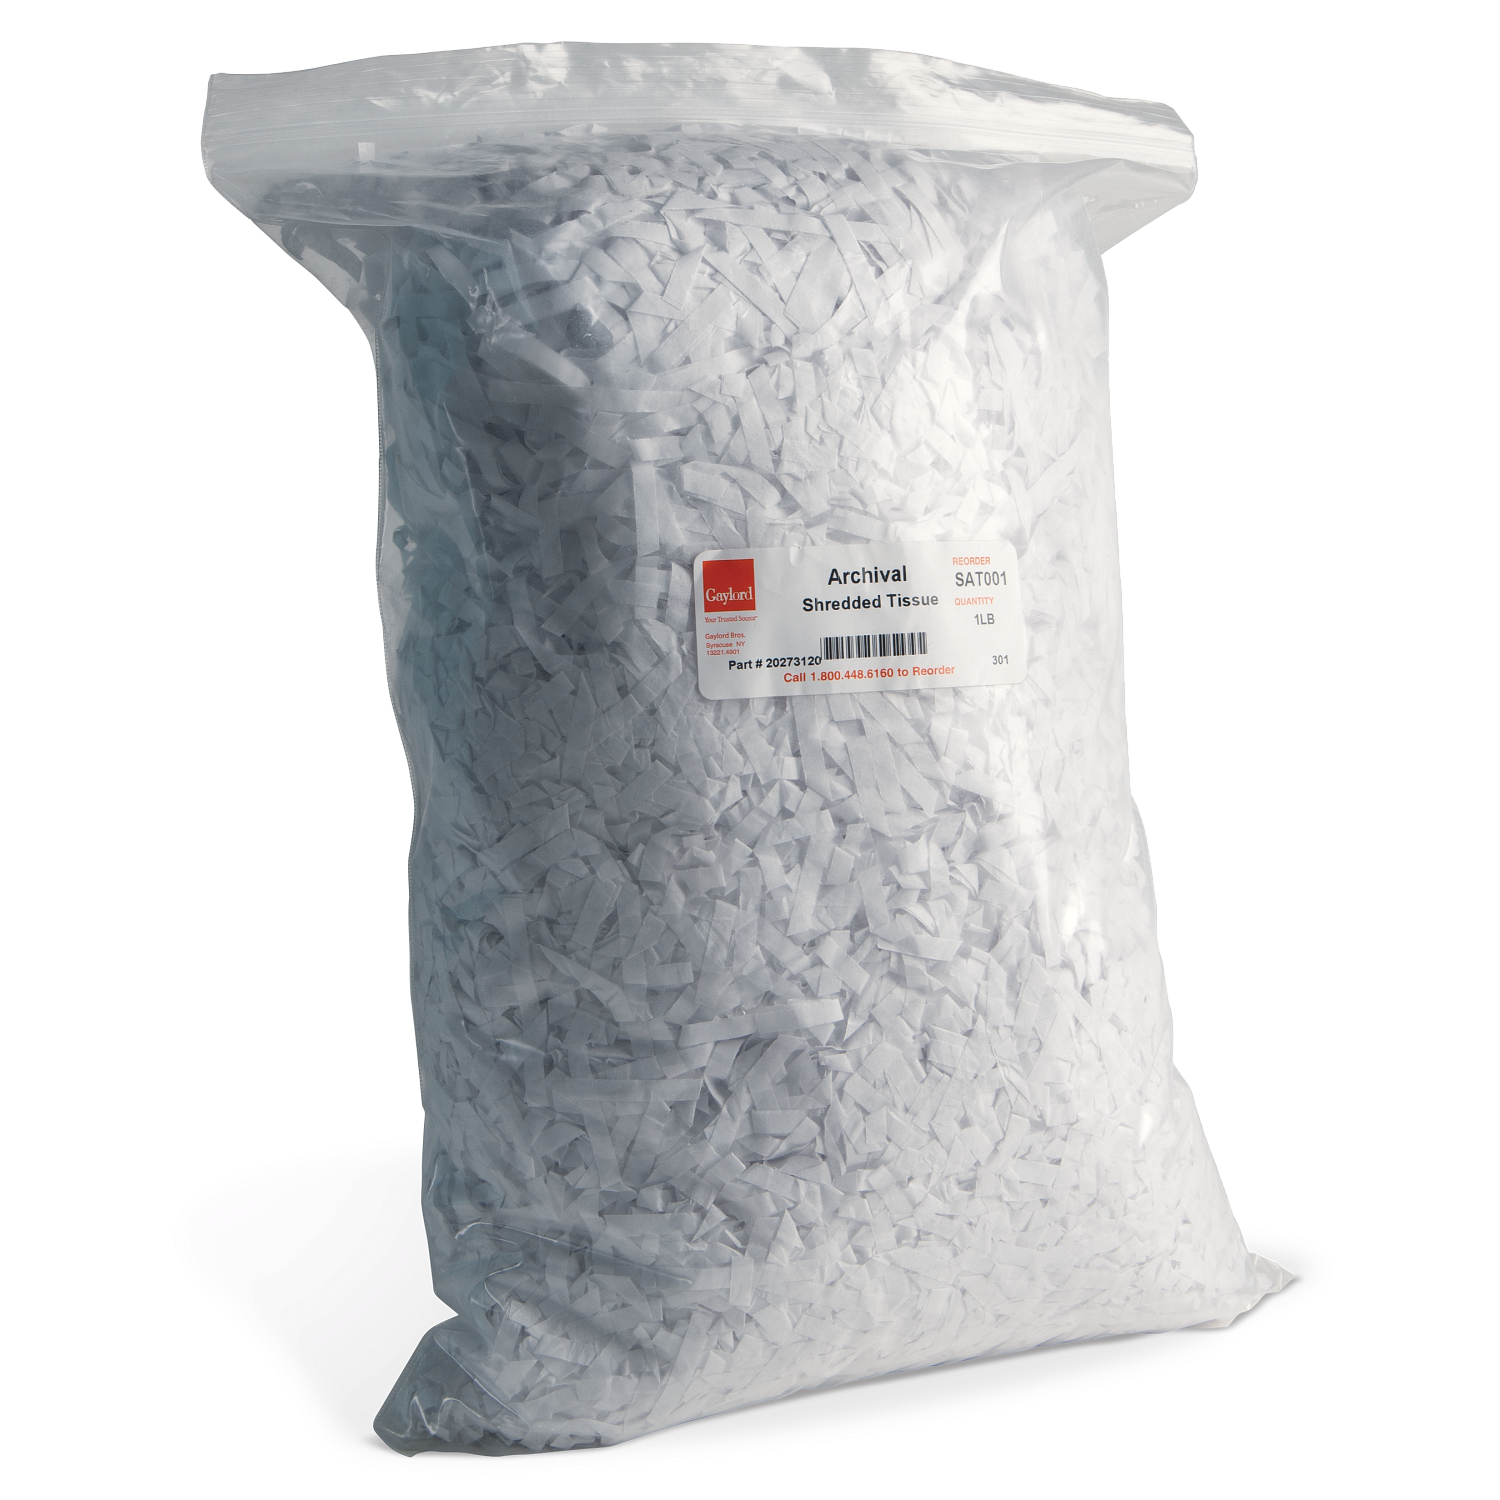 Gaylord Archival® Unbuffered Acid-Free Shredded Tissue